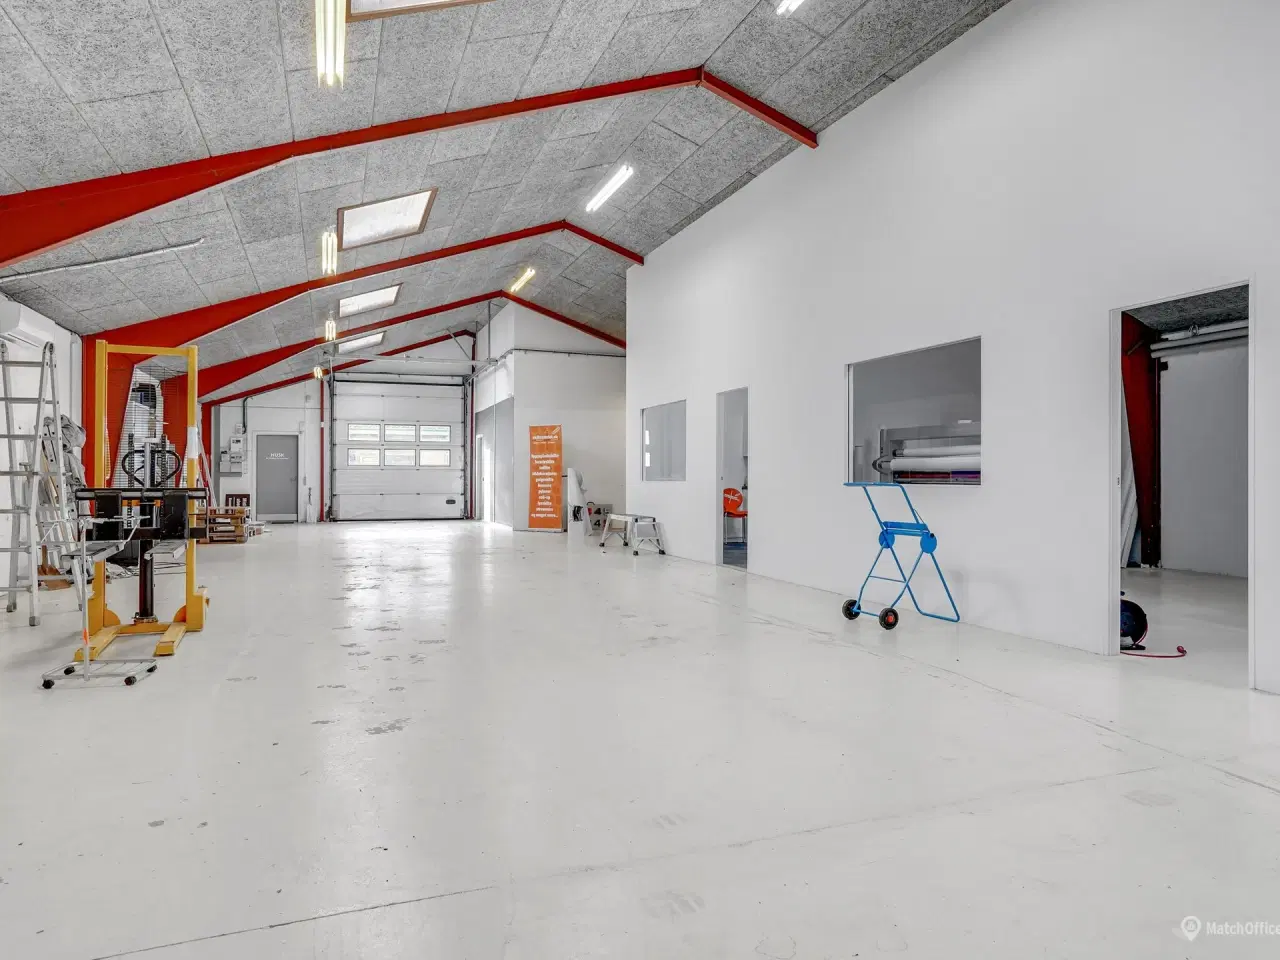 Billede 3 - 332 m² lager/kontor i større erhvervspark